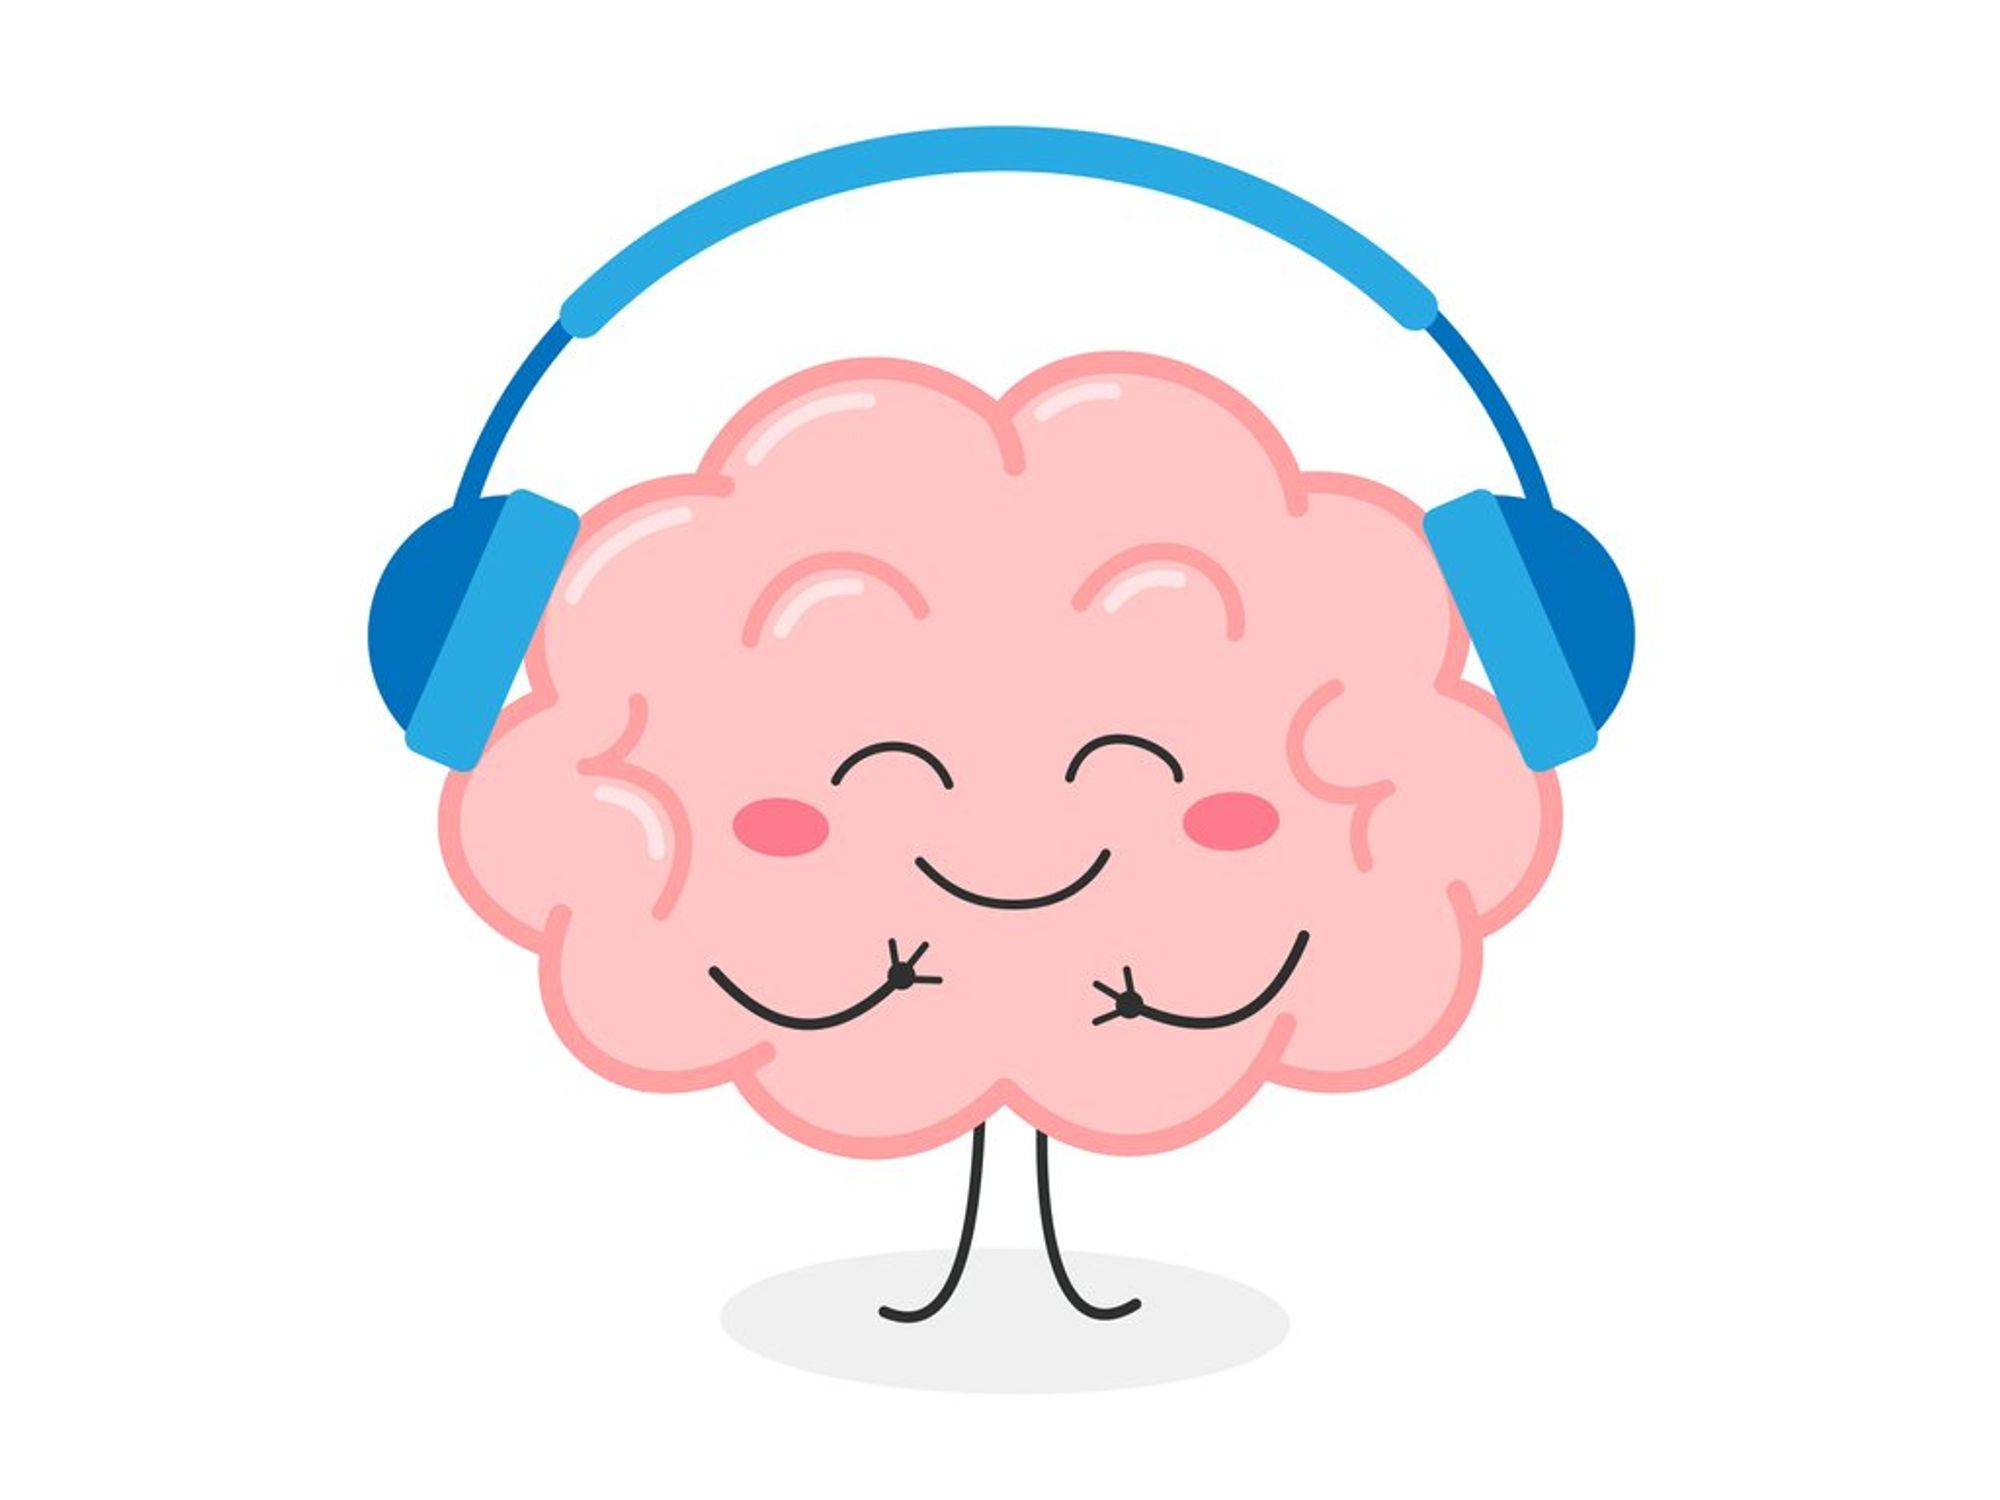 Cute joyful human brain organ character listening music in headphones